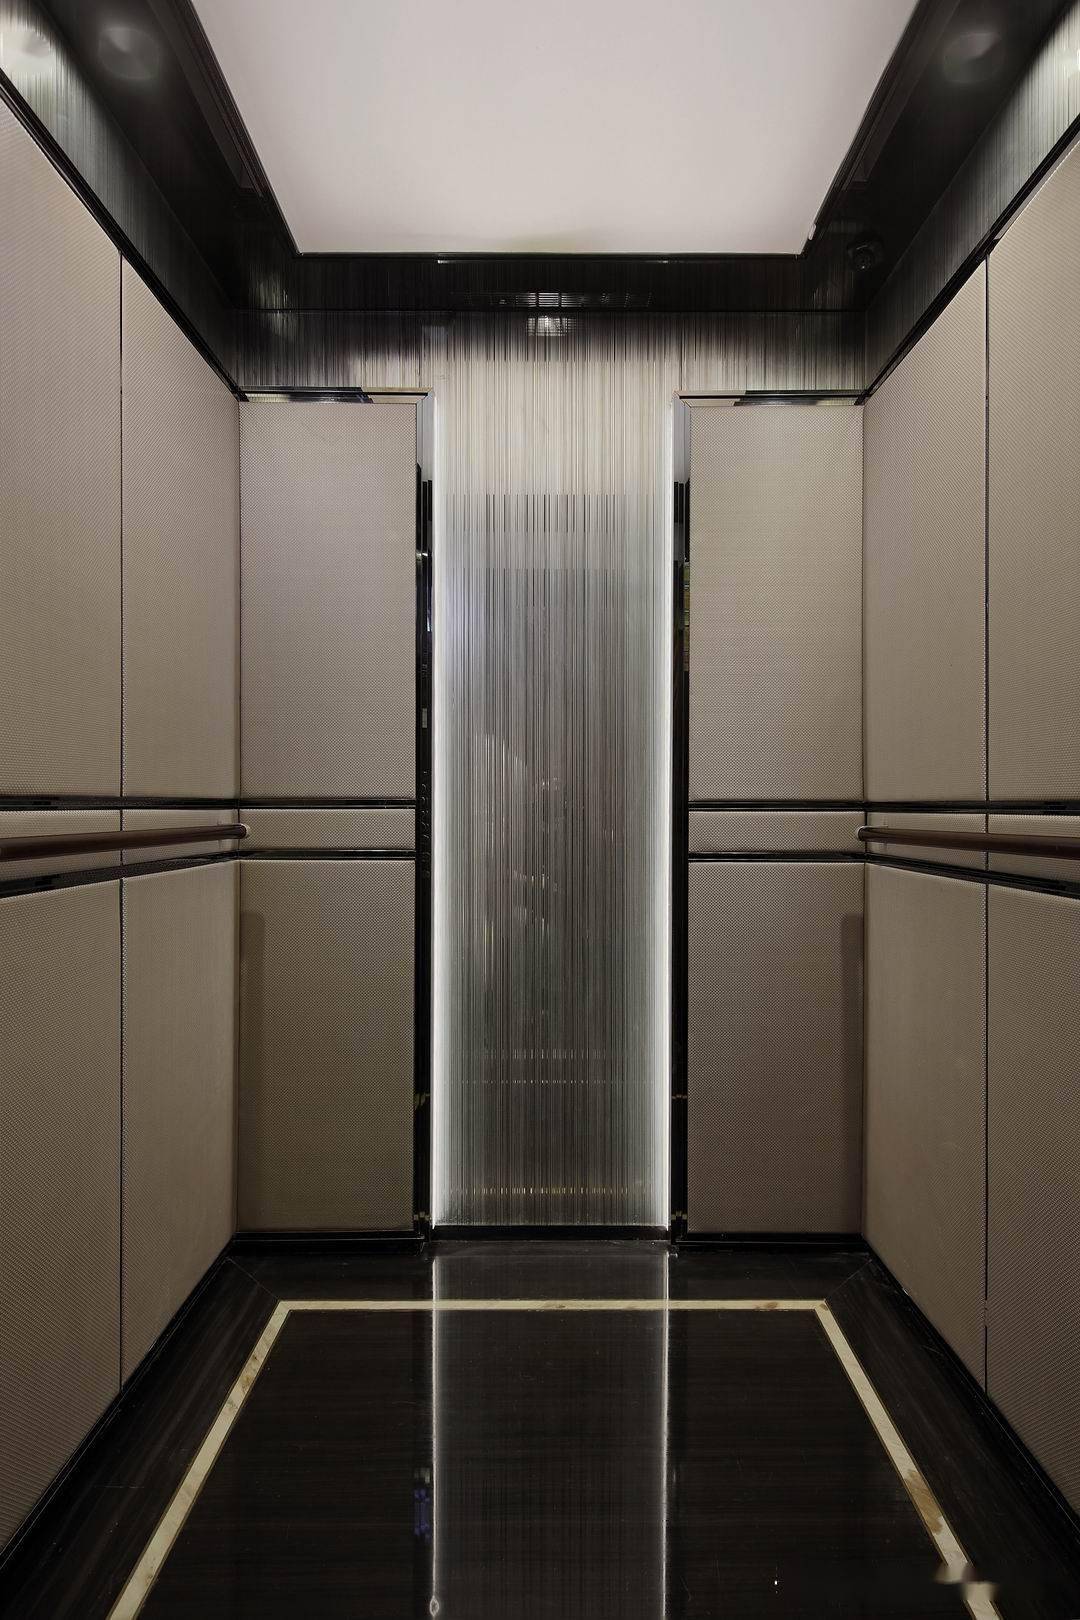 经典电梯间设计案例图集